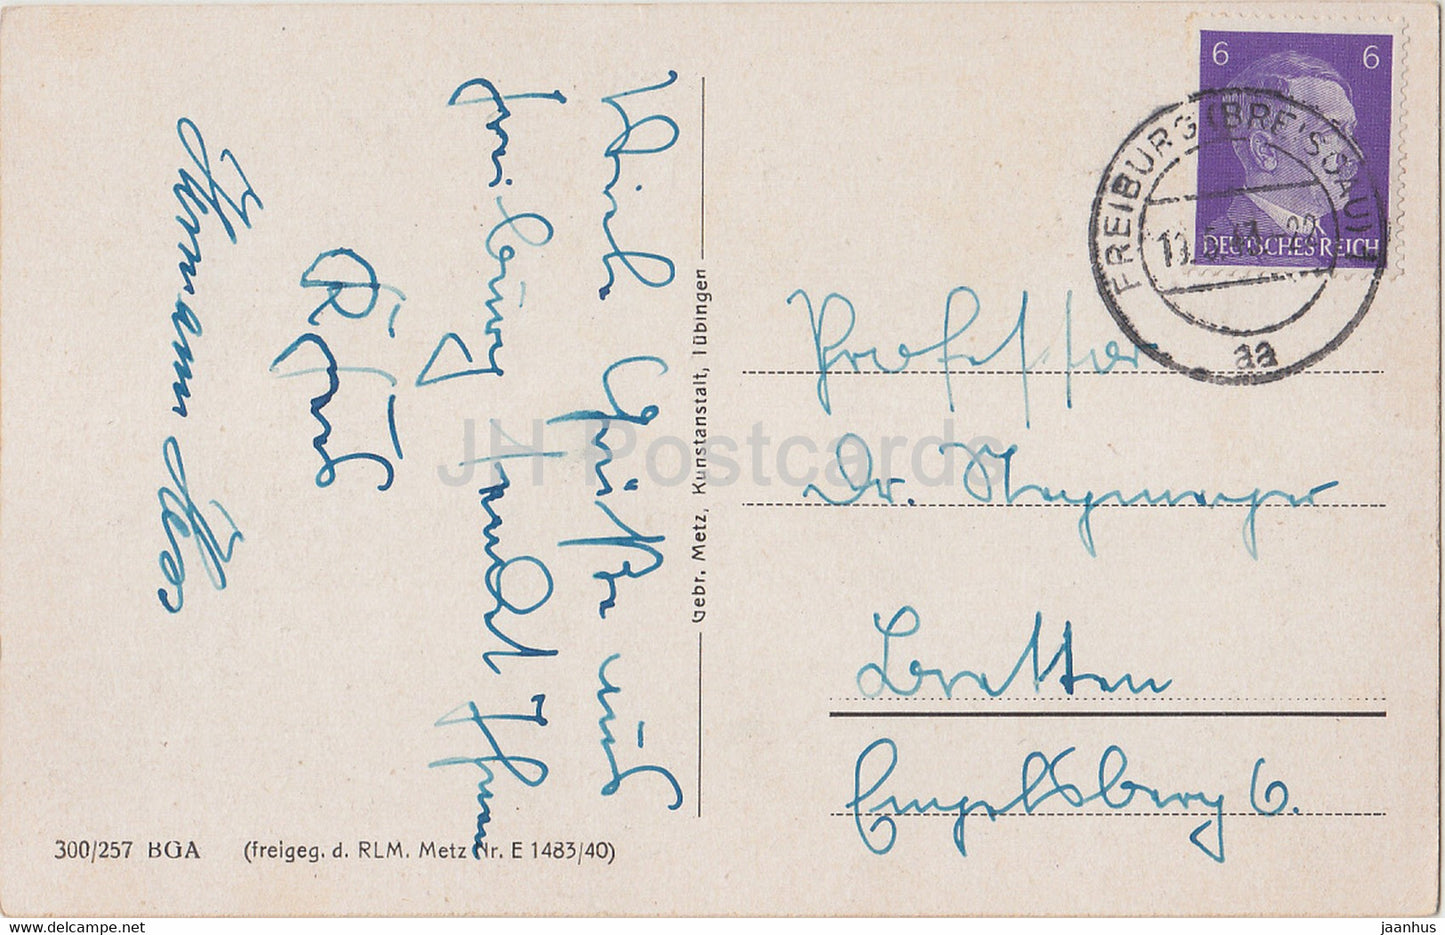 Freiburg i Br - Oberlinden - alte Postkarte - 1943 - Deutschland - gebraucht